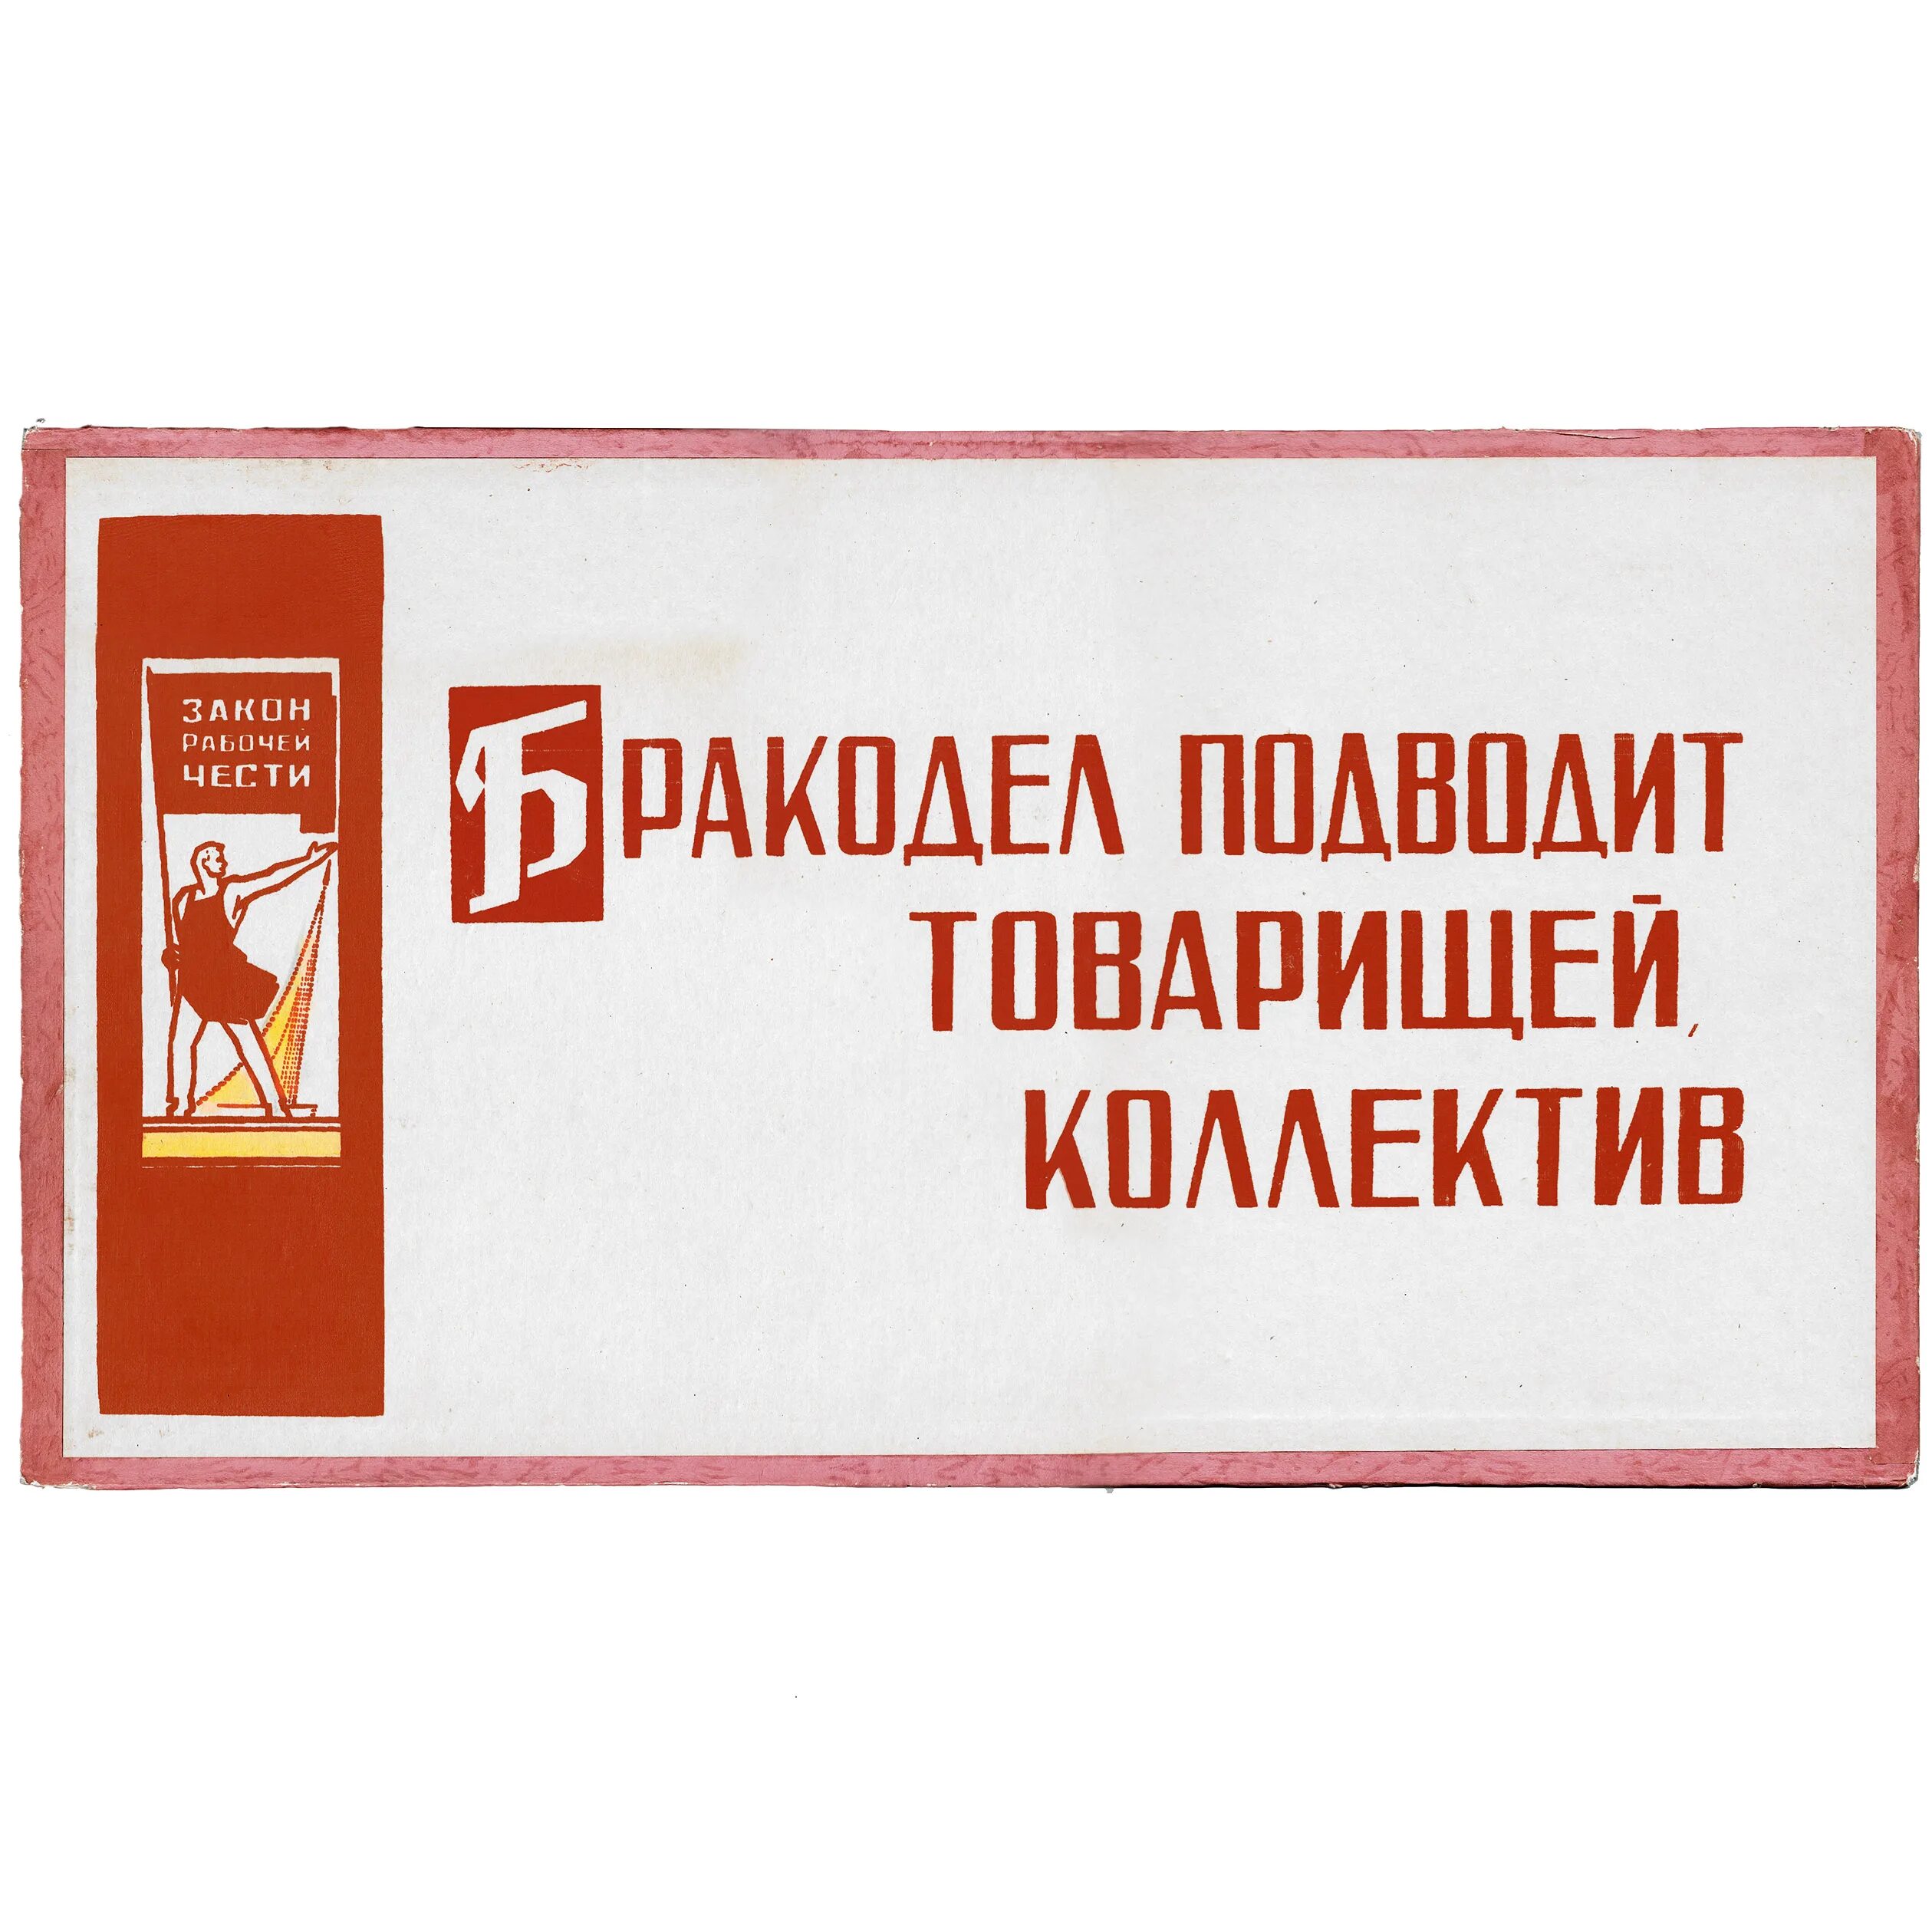 Лозунги производство. Советские лозунги и плакаты. Советские лозунги на производстве. Советские лозунги на заводах. Советские плакаты про качество продукции.